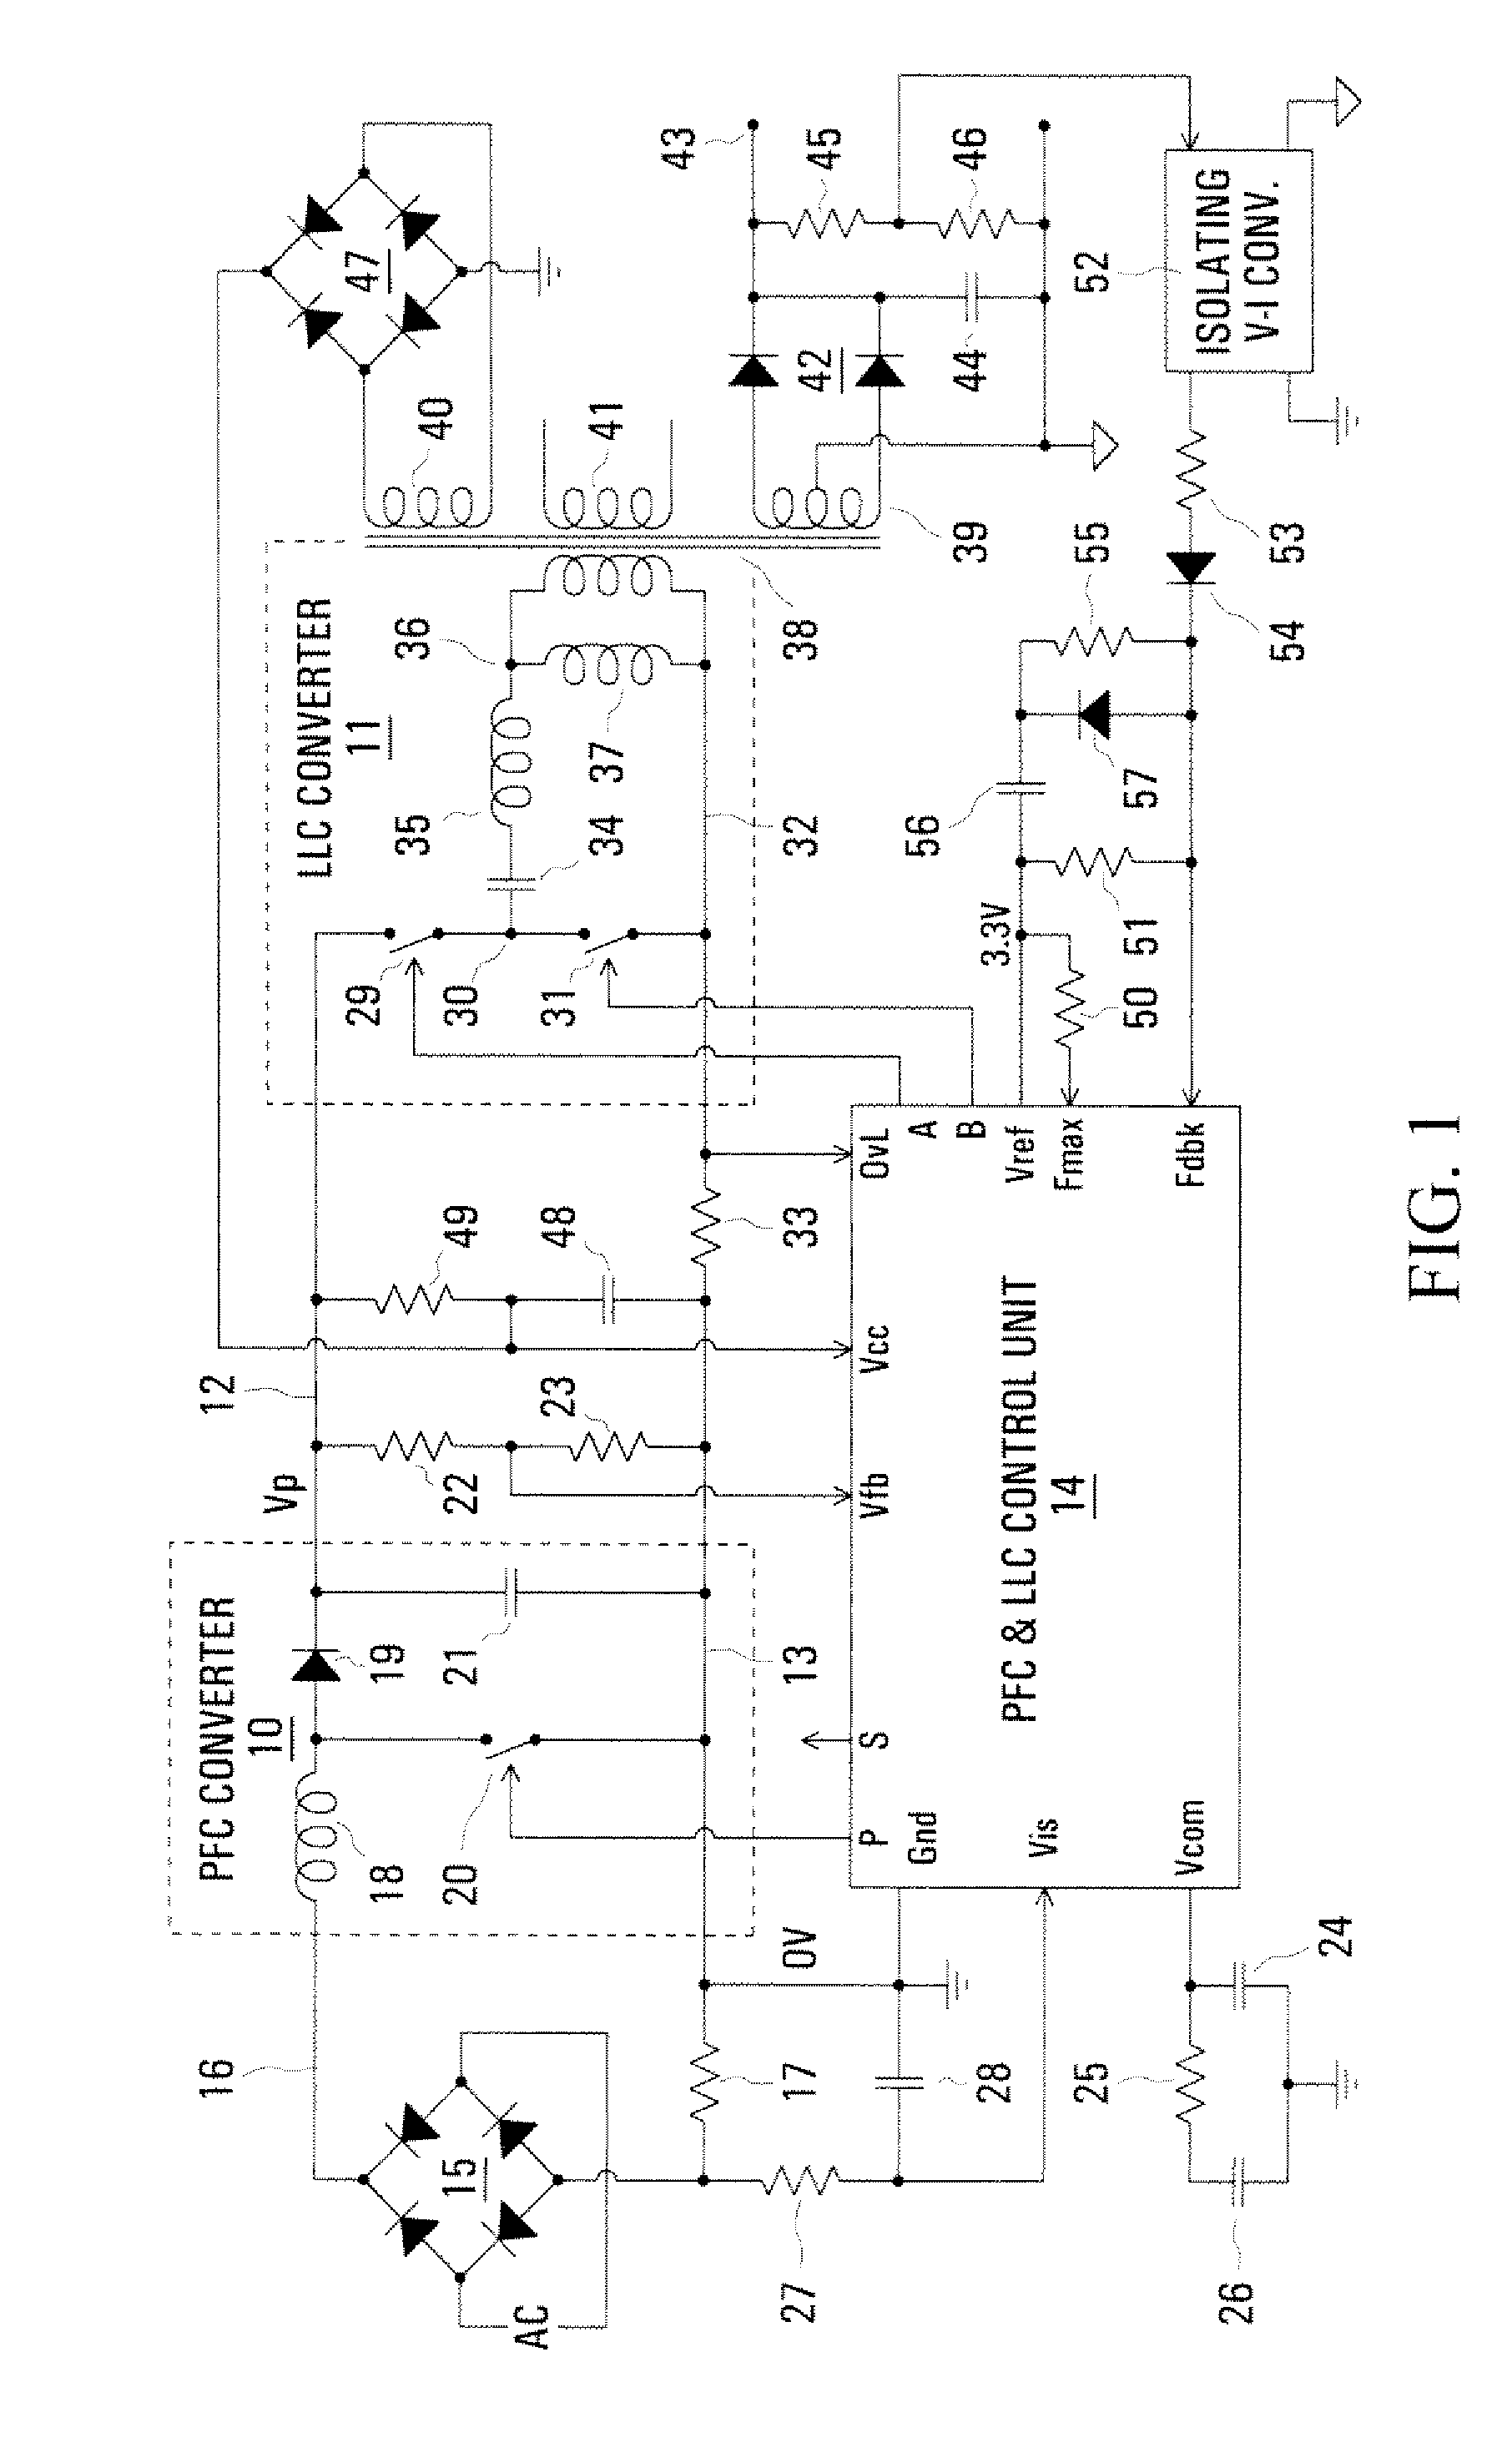 Control arrangement for a pfc power converter